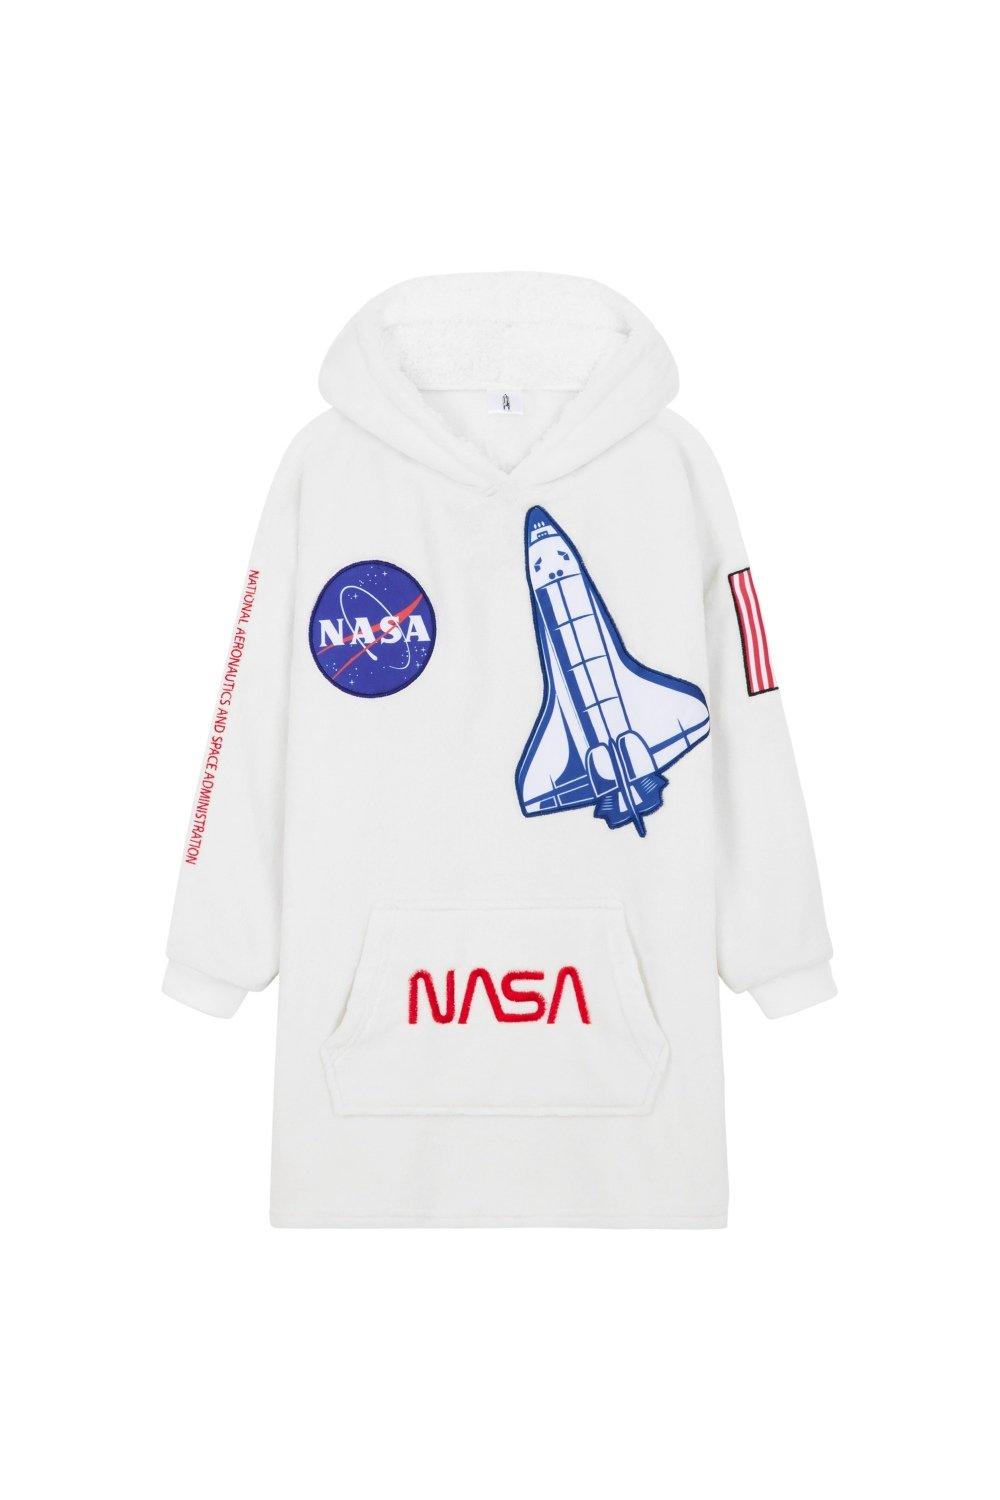 Пончо оверсайз с капюшоном NASA, мультиколор фото